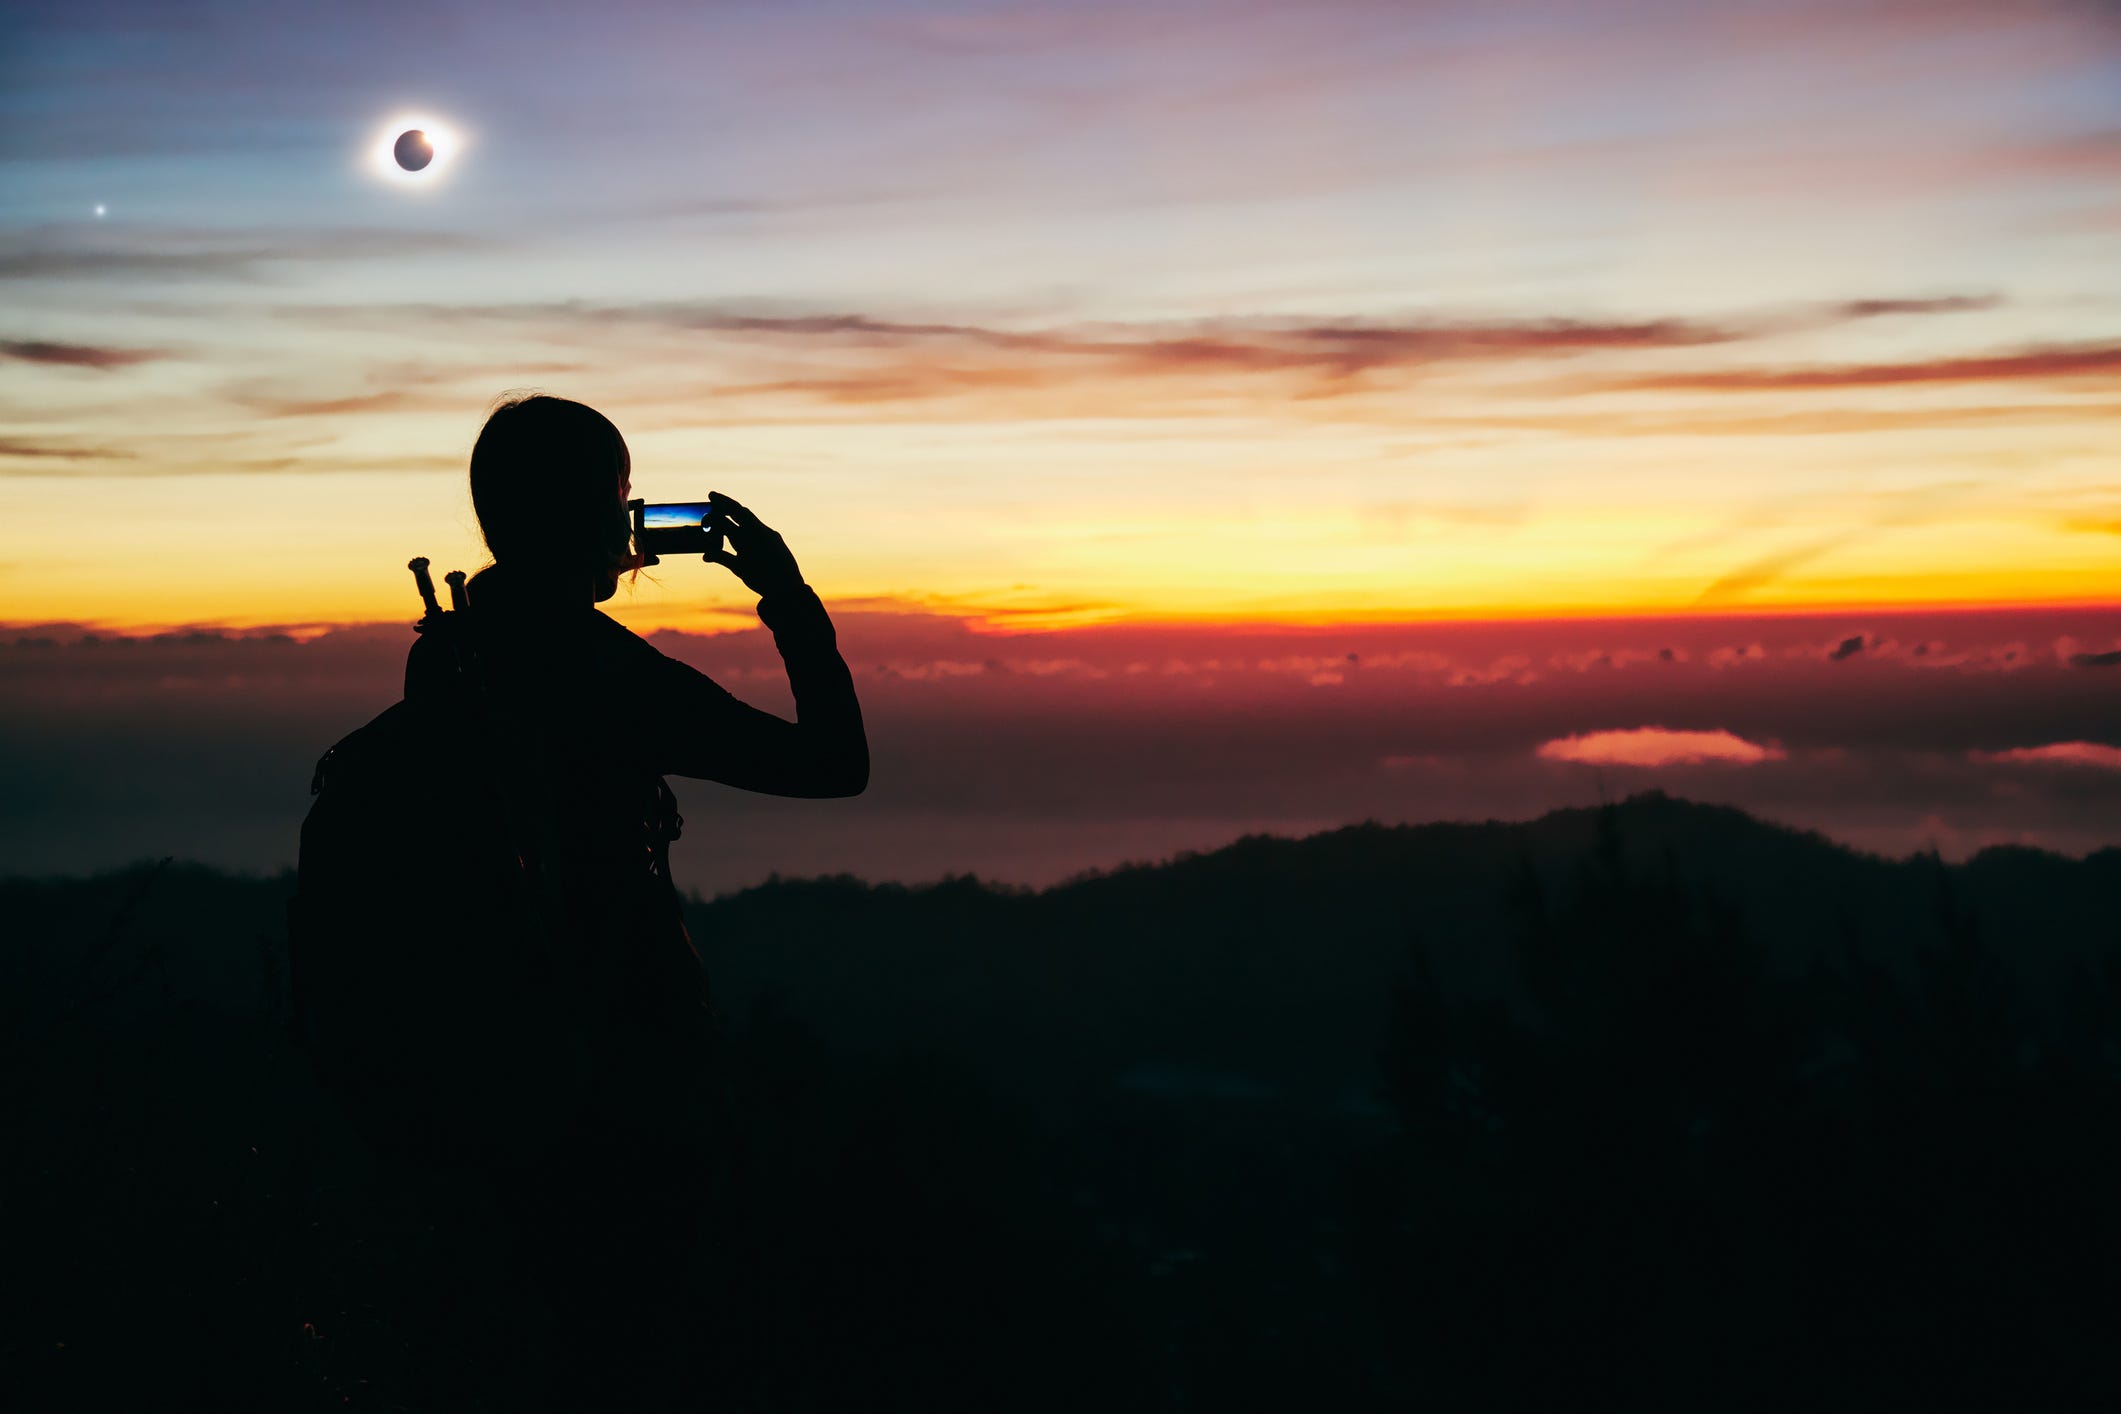 Die Silhouette einer Person, die mit ihrem iPhone ein Foto des sonnenuntergangsähnlichen Horizonts macht, mit einer totalen Sonnenfinsternis am Himmel darüber